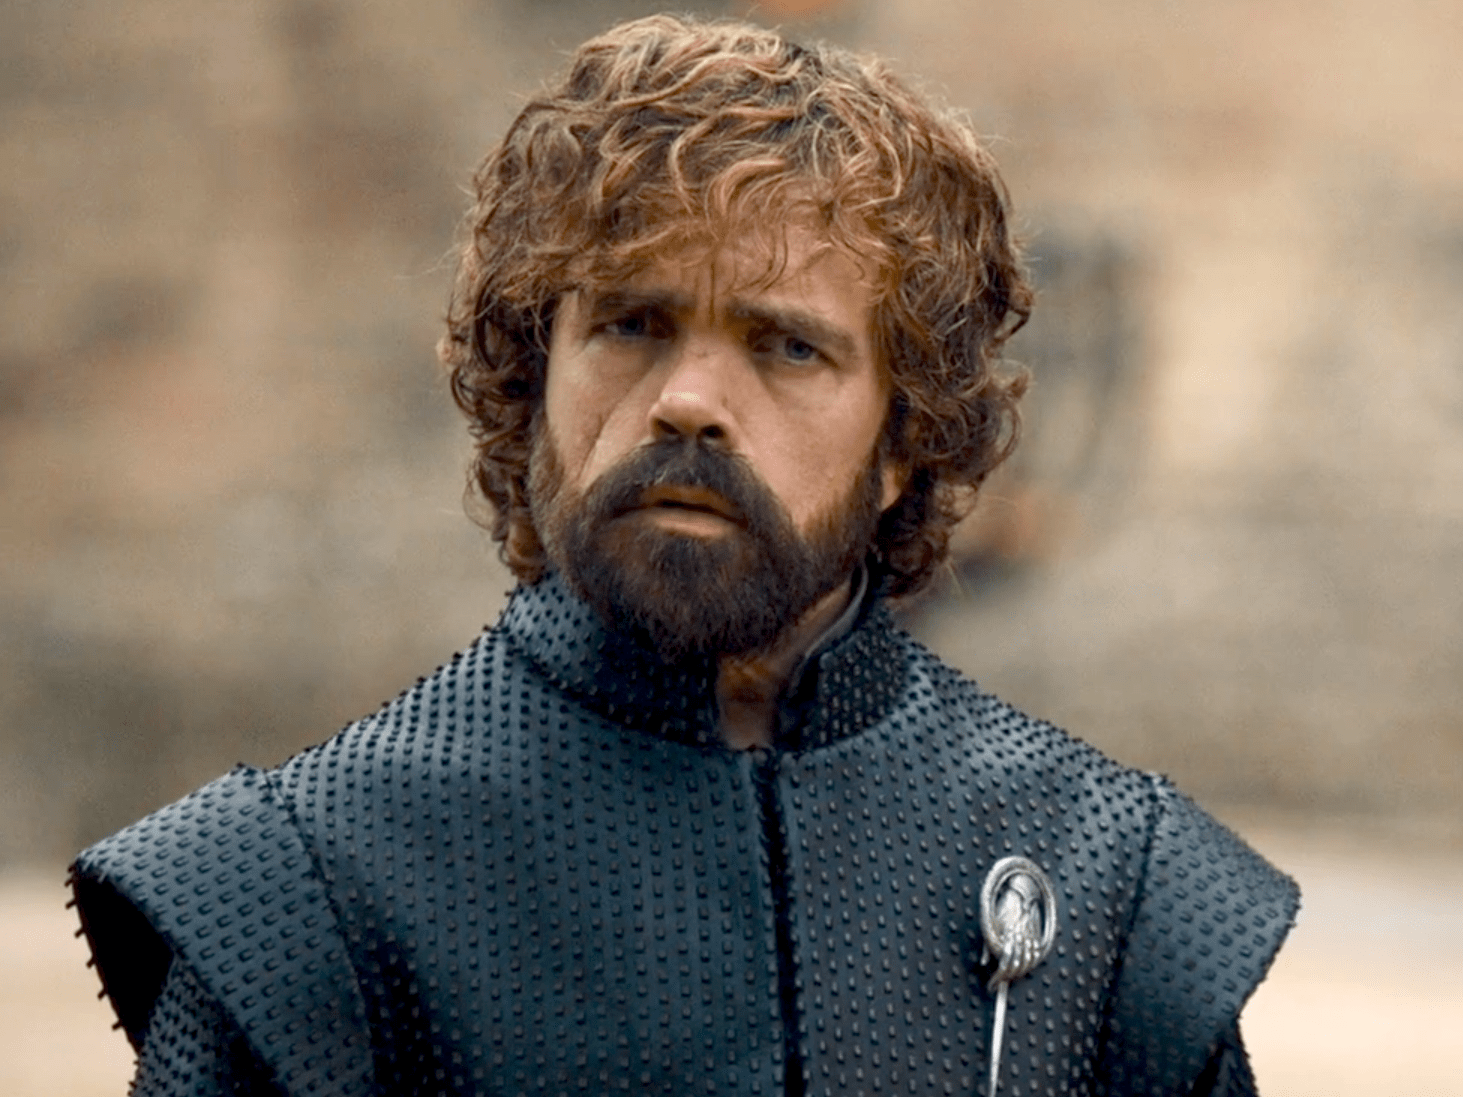 Peter Dinklage - Tyrion Lannister